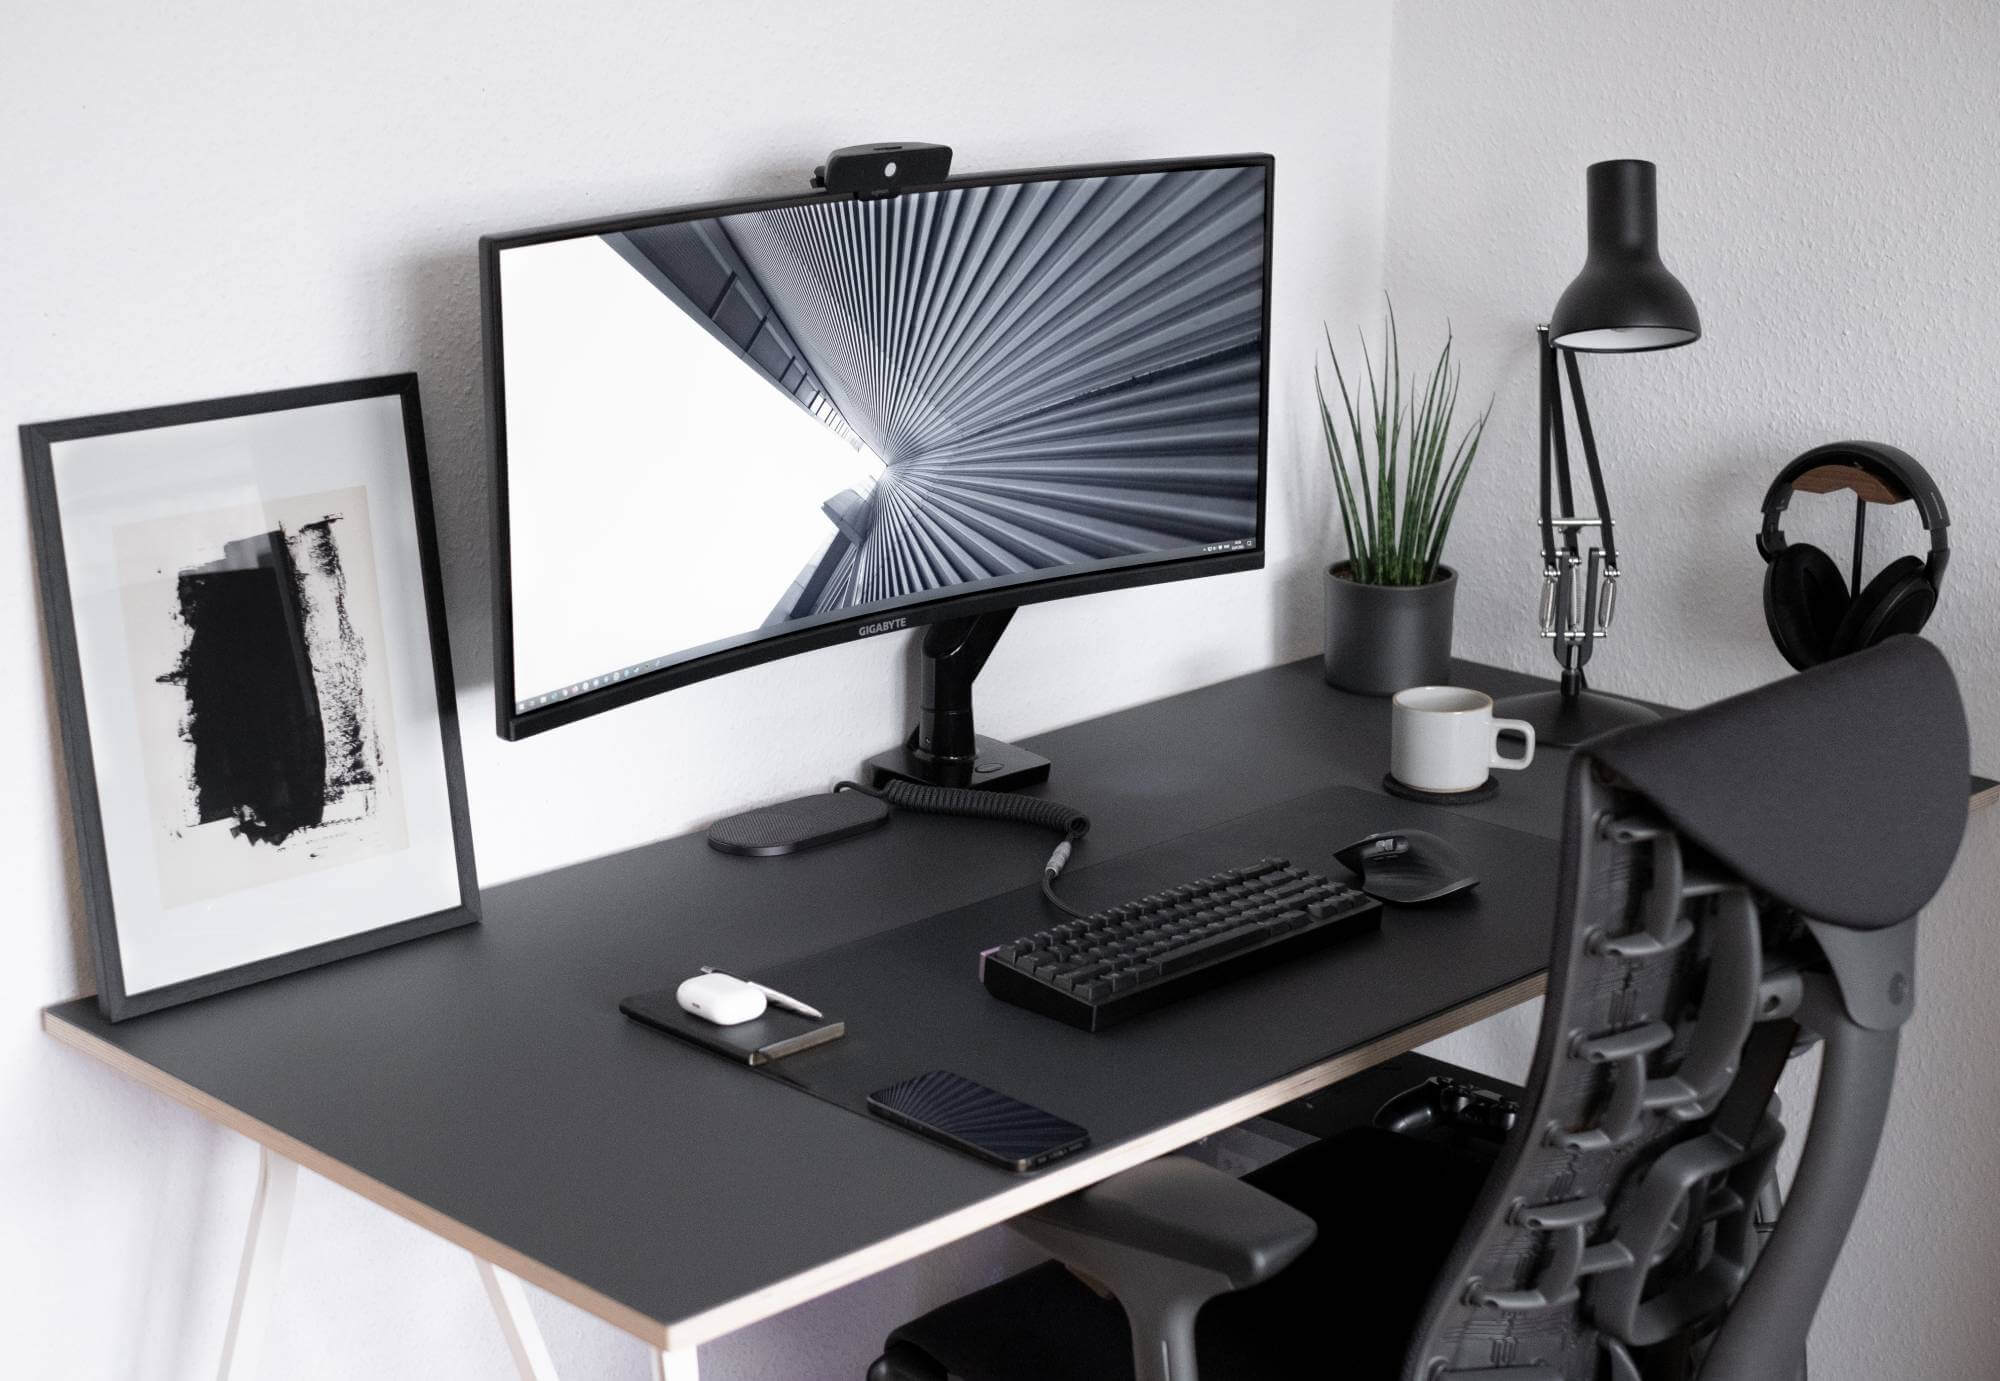 Minimalist Monochrome Desk Setup